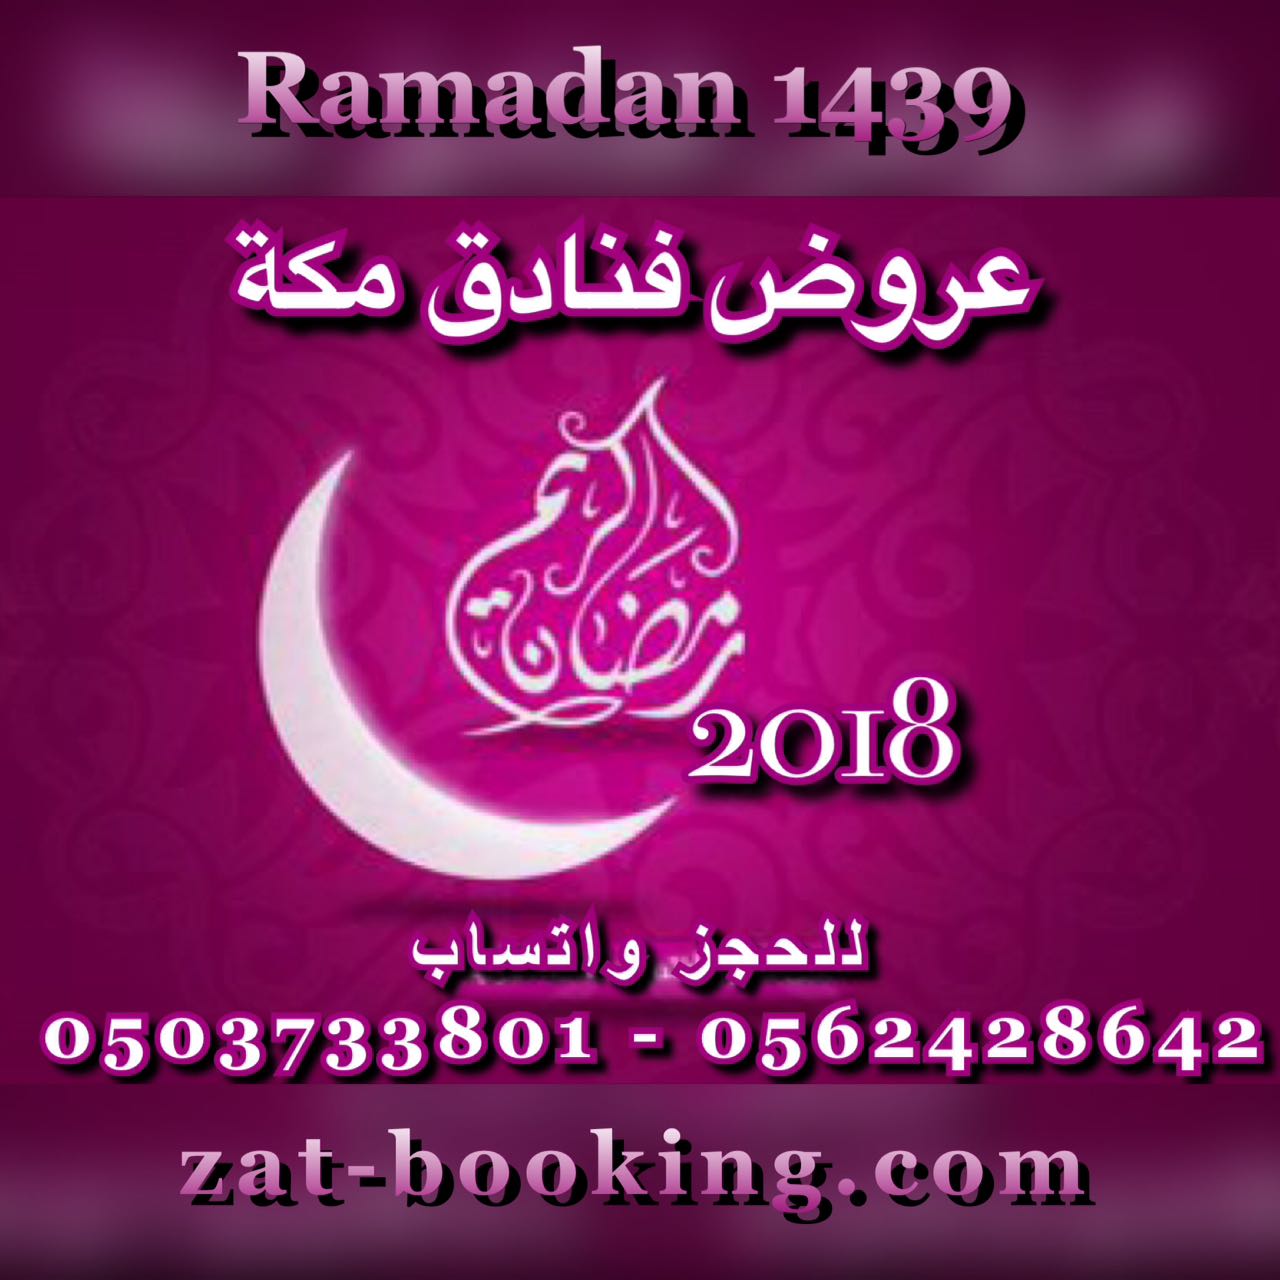 Makkah Hotels Rates Ramadan Offers 1439